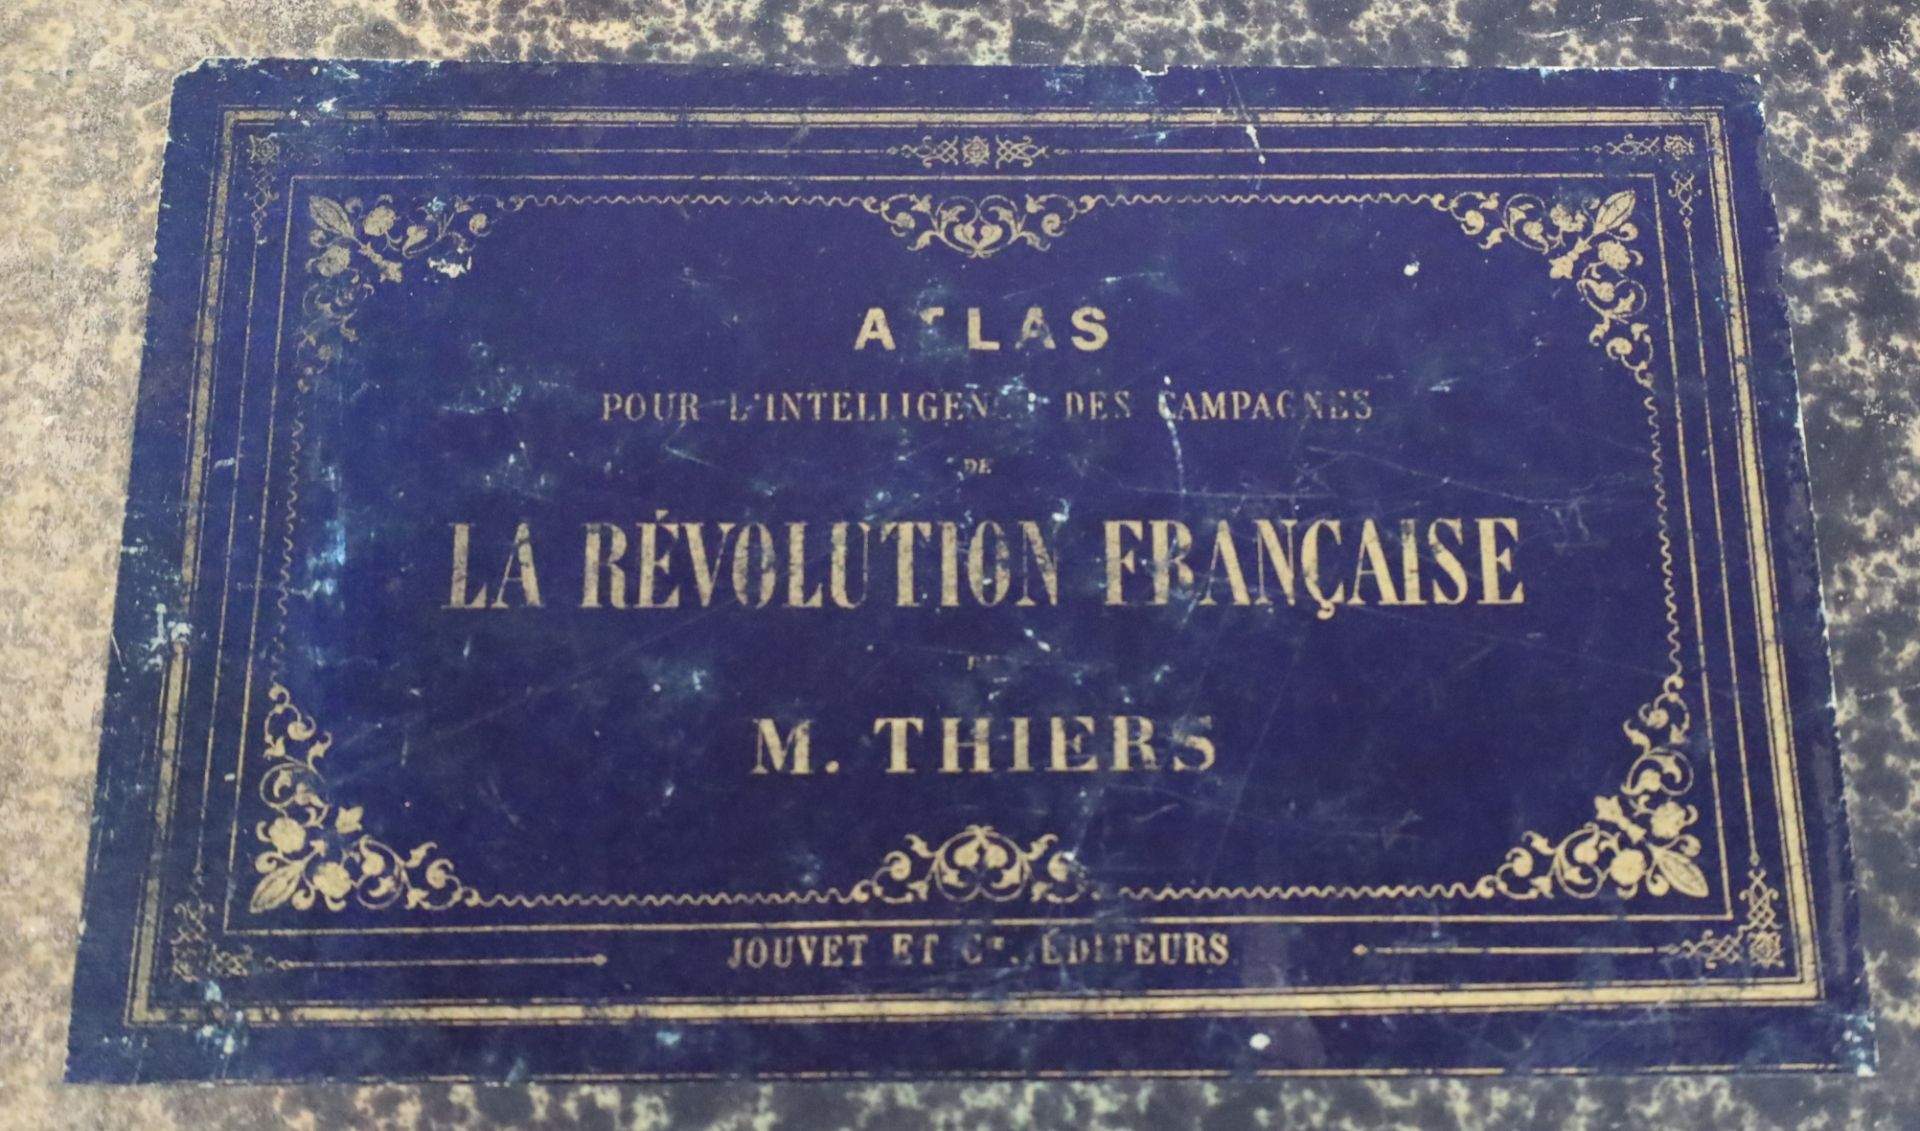 M. THIERS. "Atlas pour l'intelligence des Campagnes de la Révolution Française". - Image 3 of 15